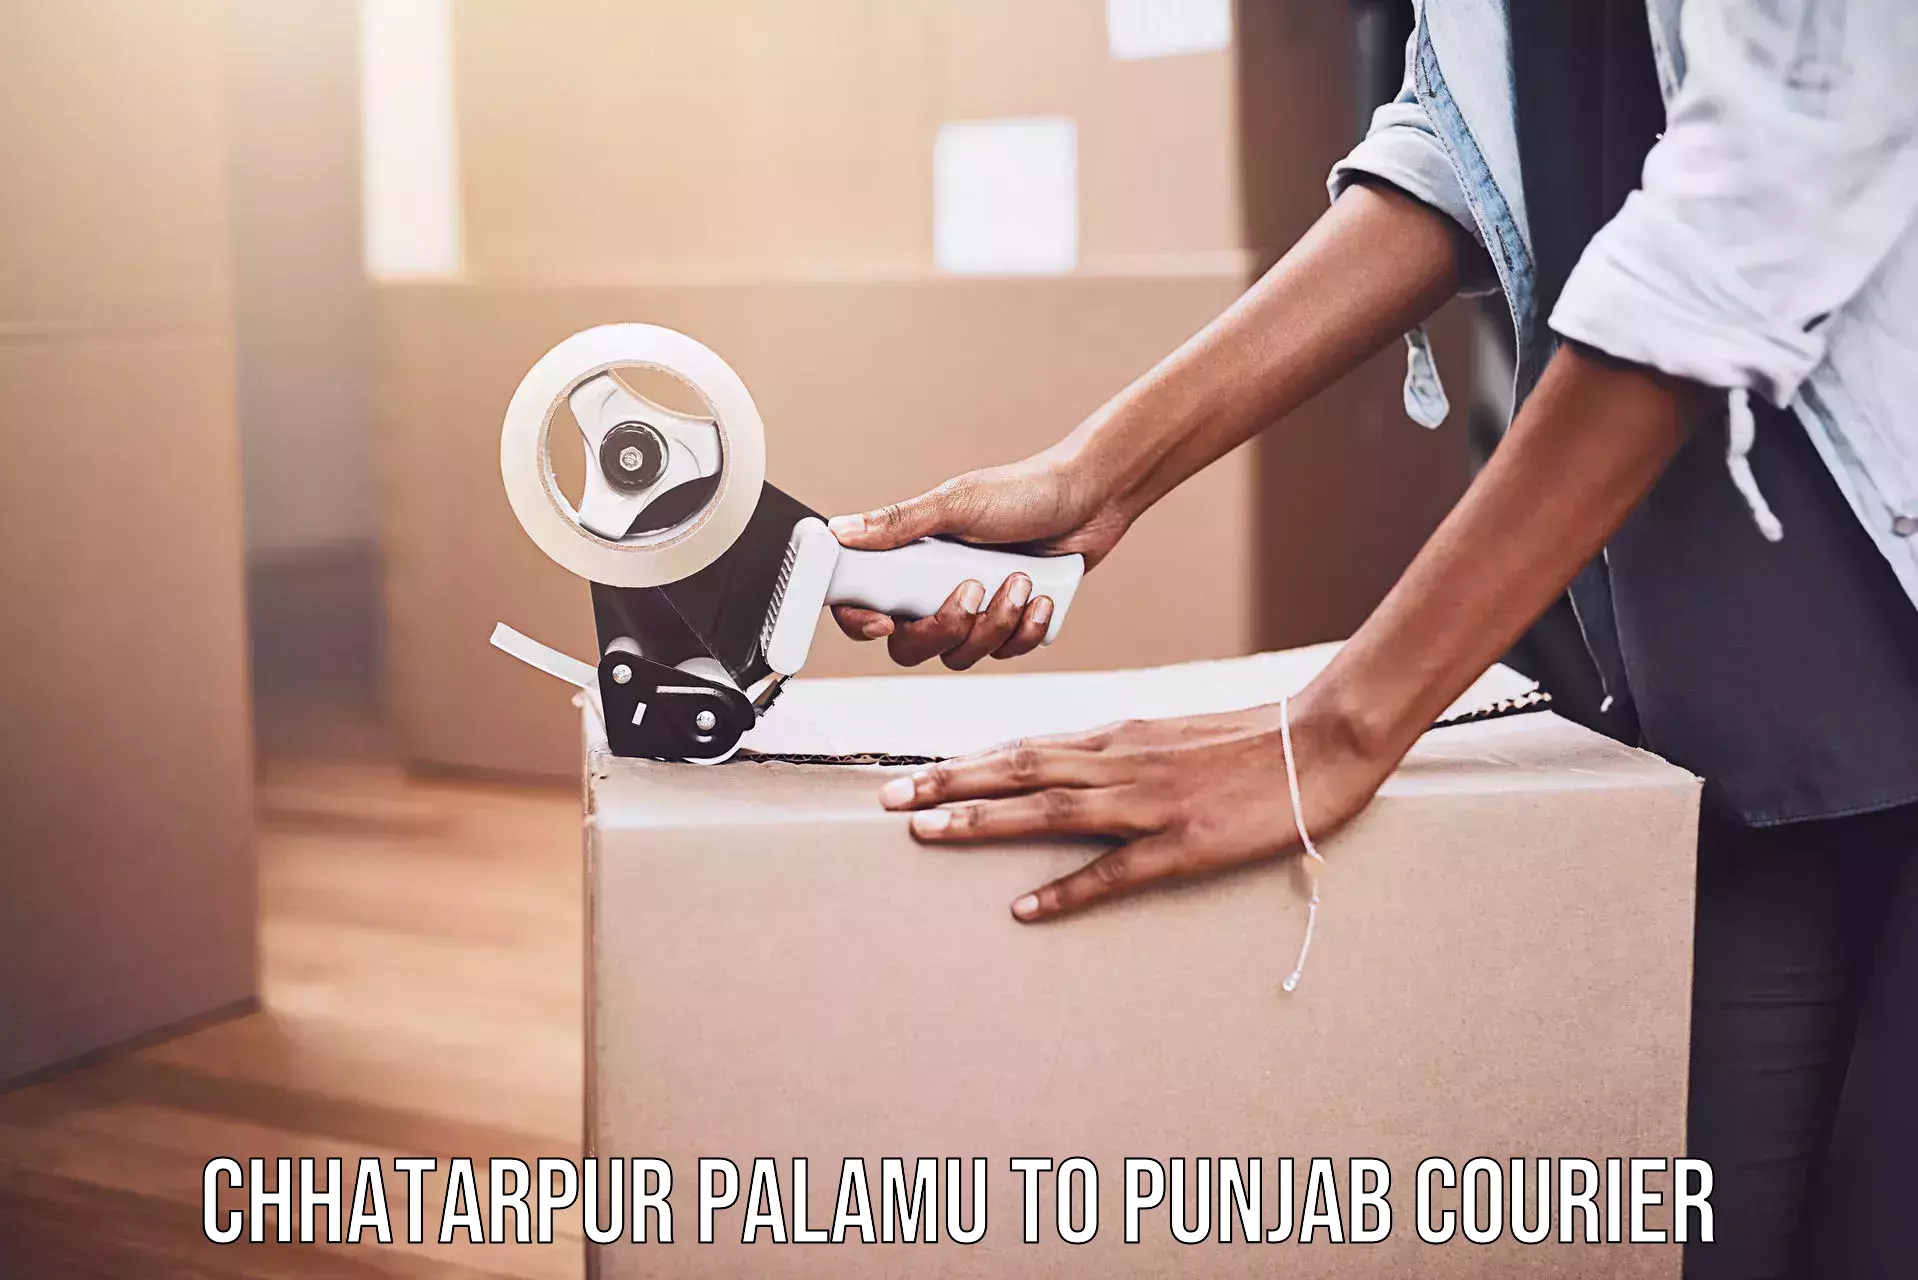 Digital courier platforms Chhatarpur Palamu to Batala